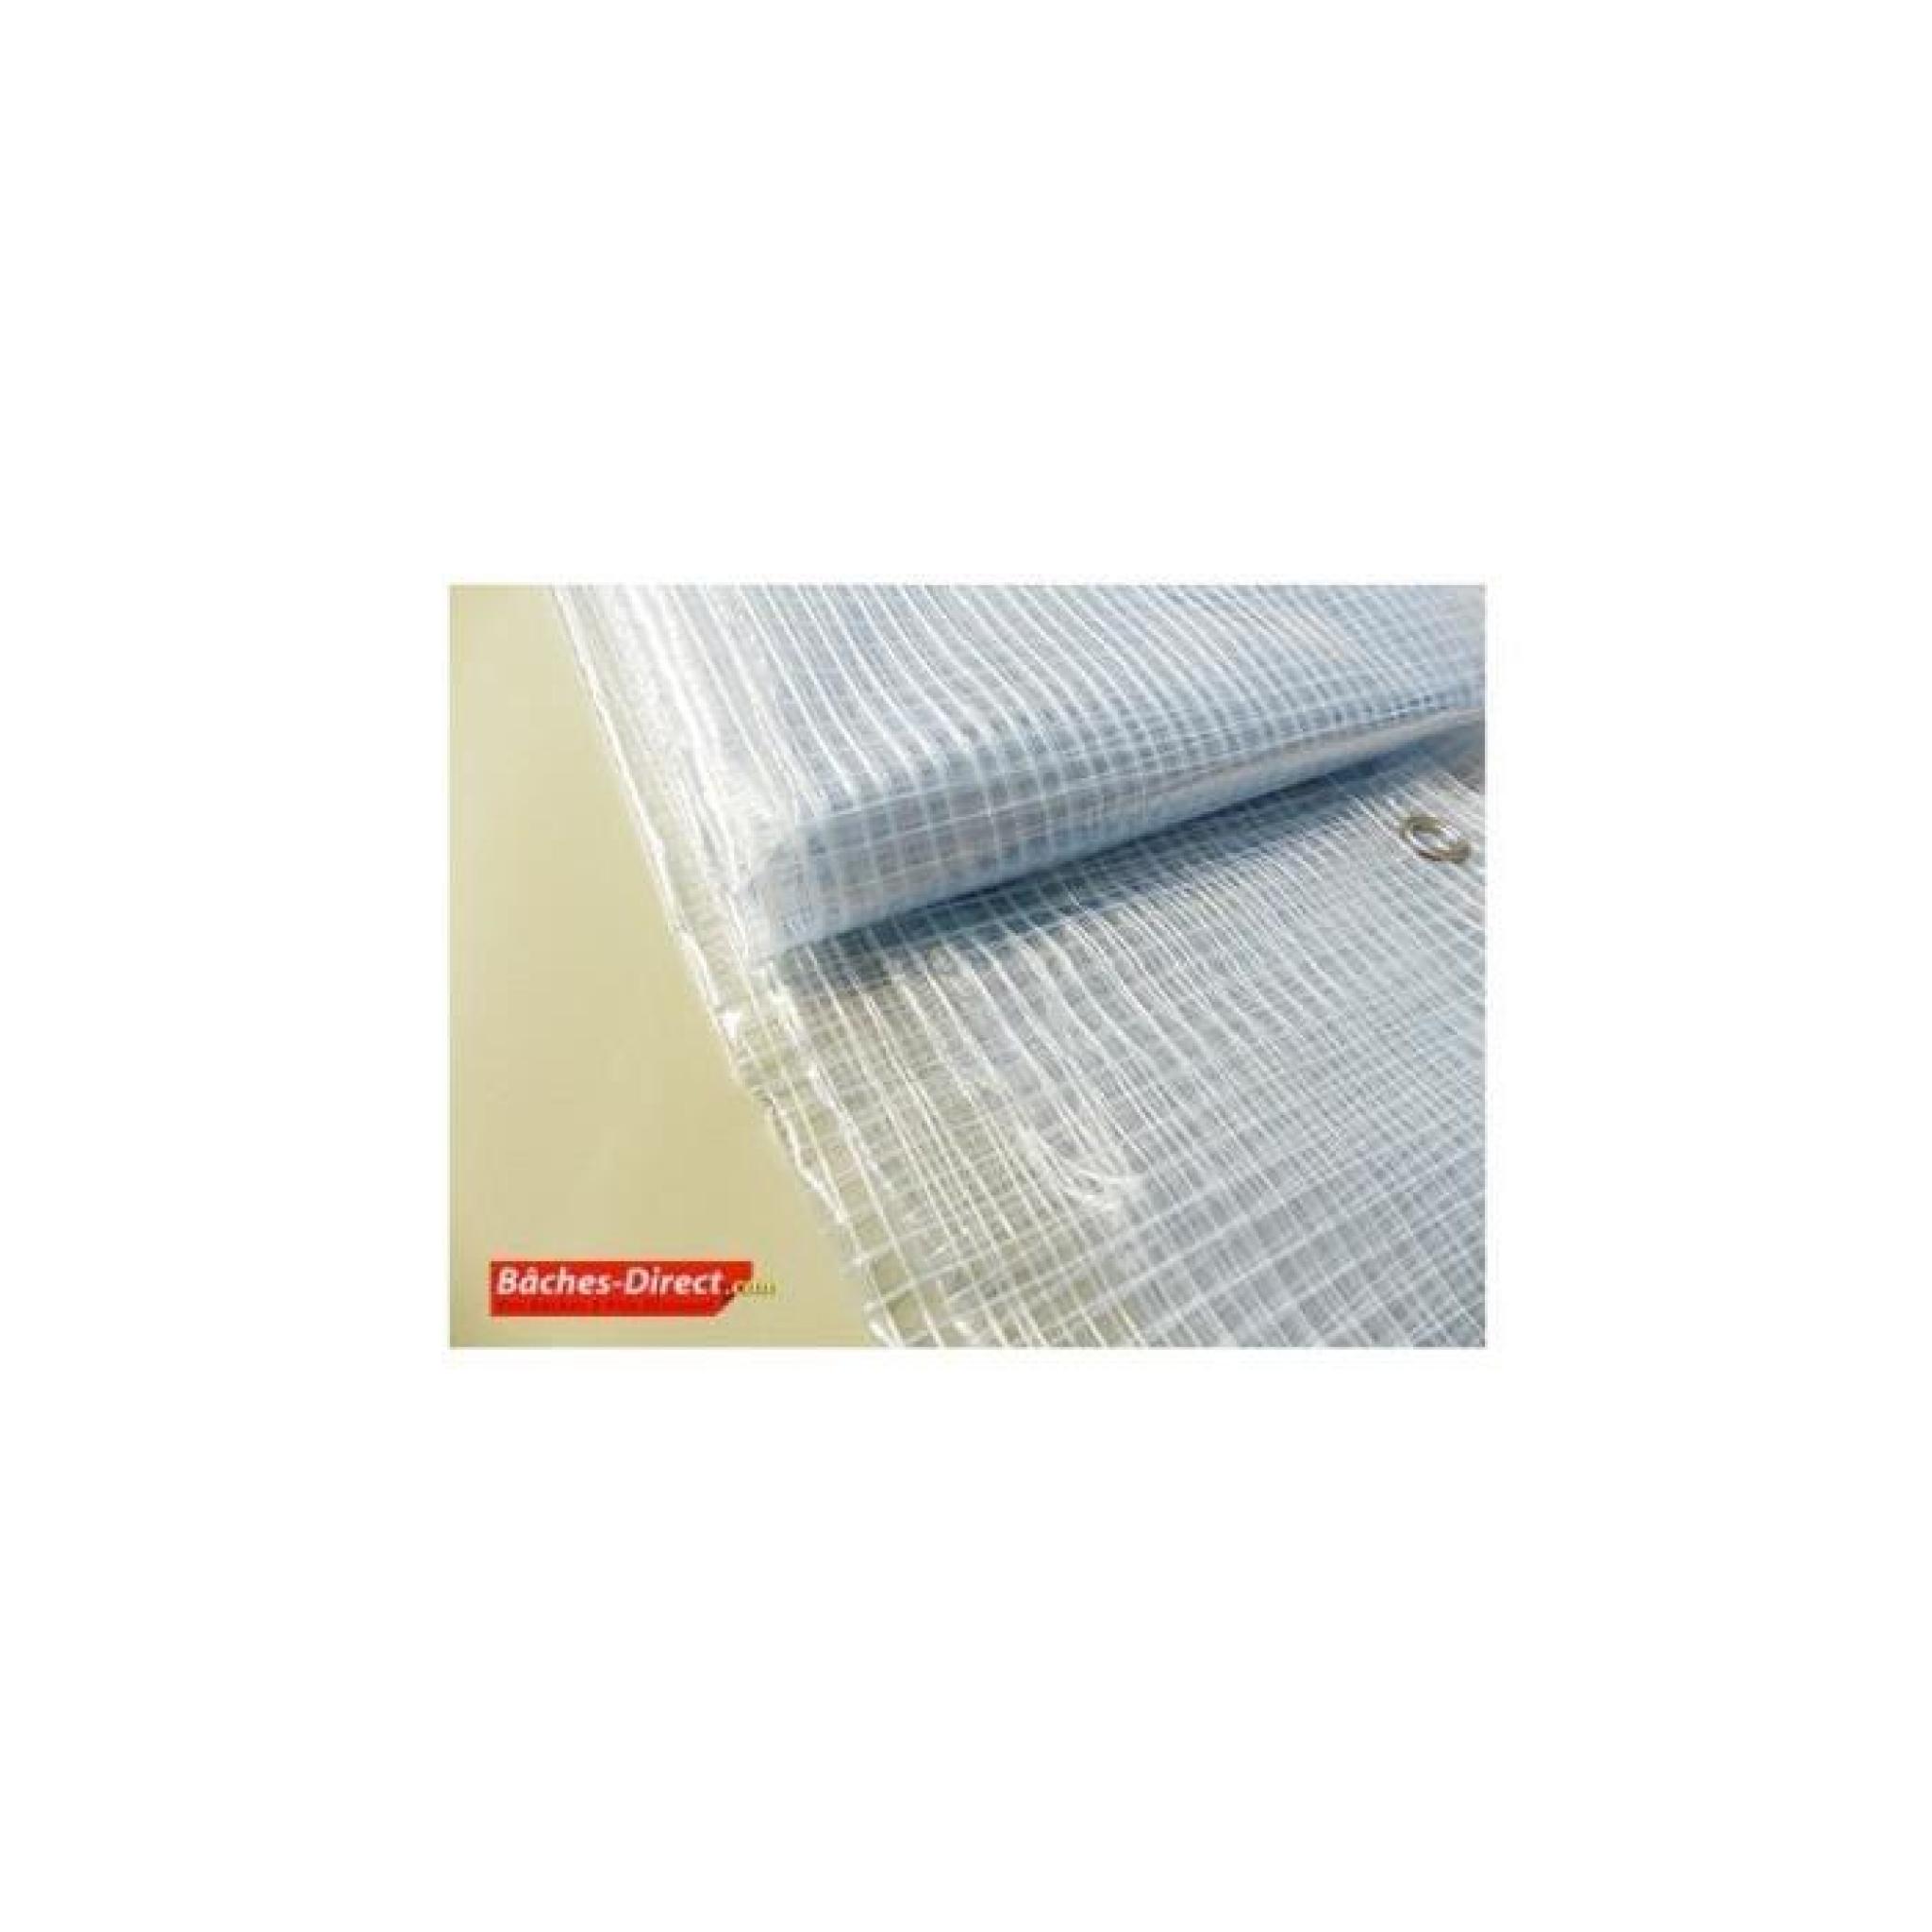 BACHES DIRECT - Bâche Pergola 400 g/m² - 5.8 x 6 m - bache transparente pour toile de pergola - bache imperméable Transparente Armée pas cher